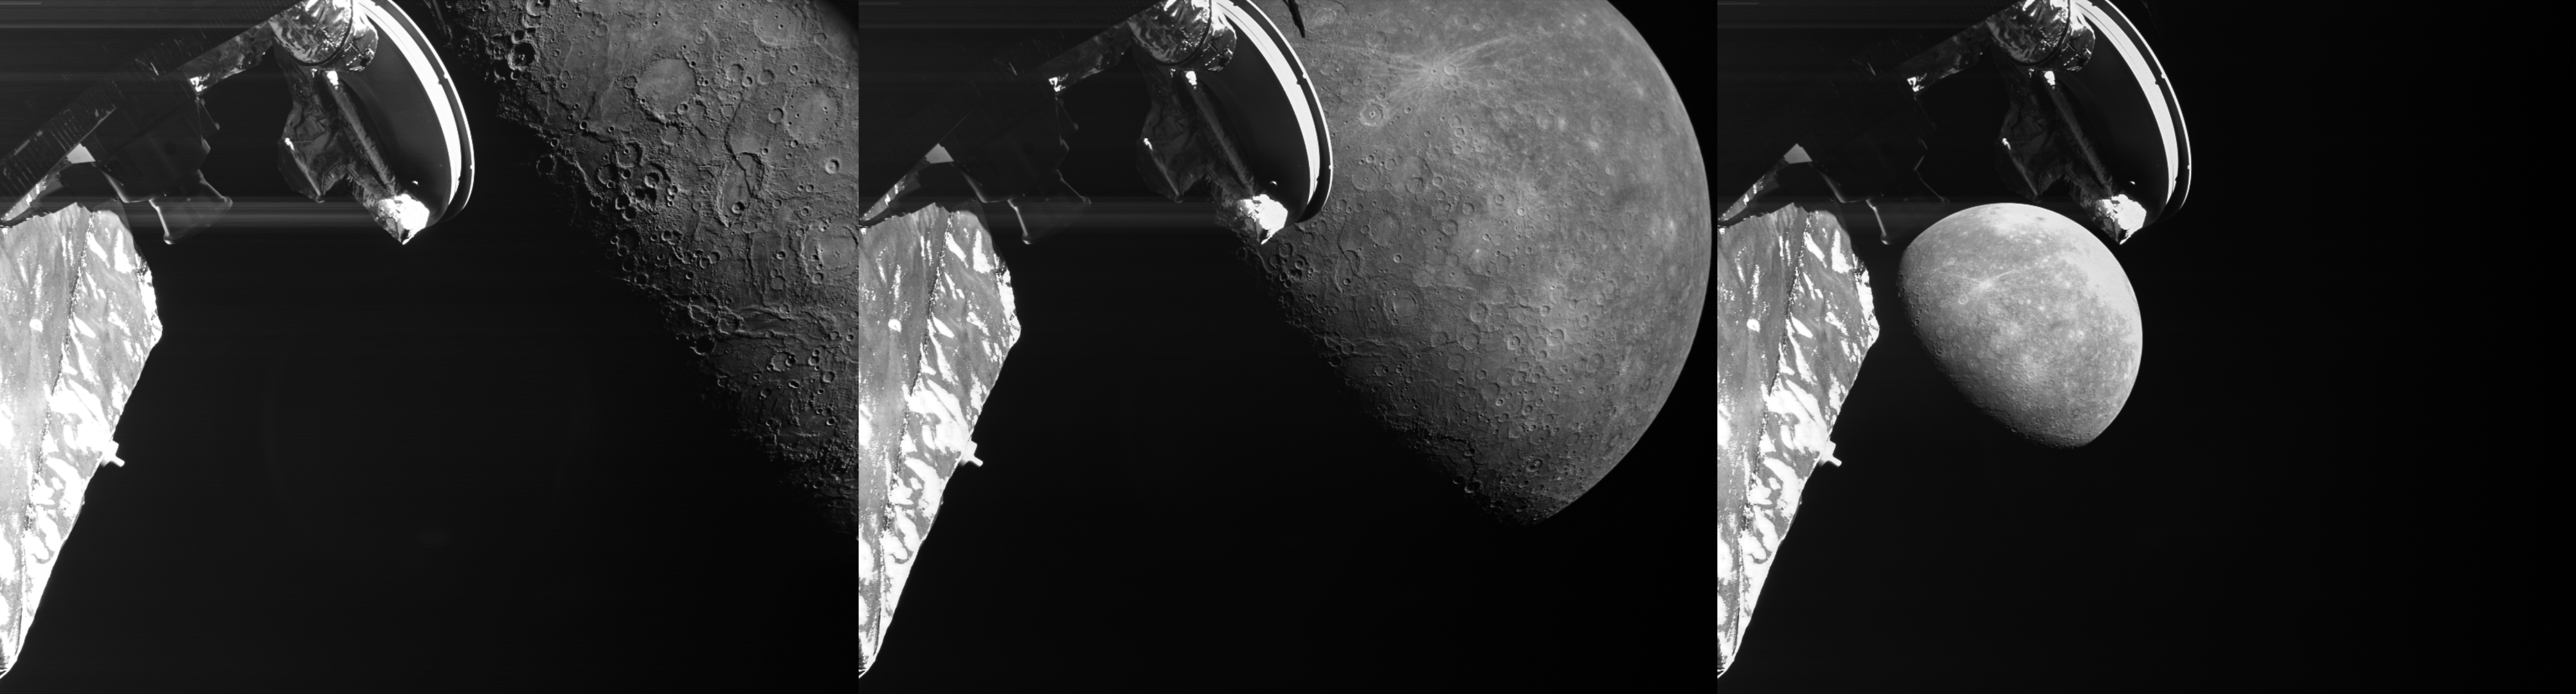 Trois des images mettent en évidence le troisième survol de BepiColombo par Mercury